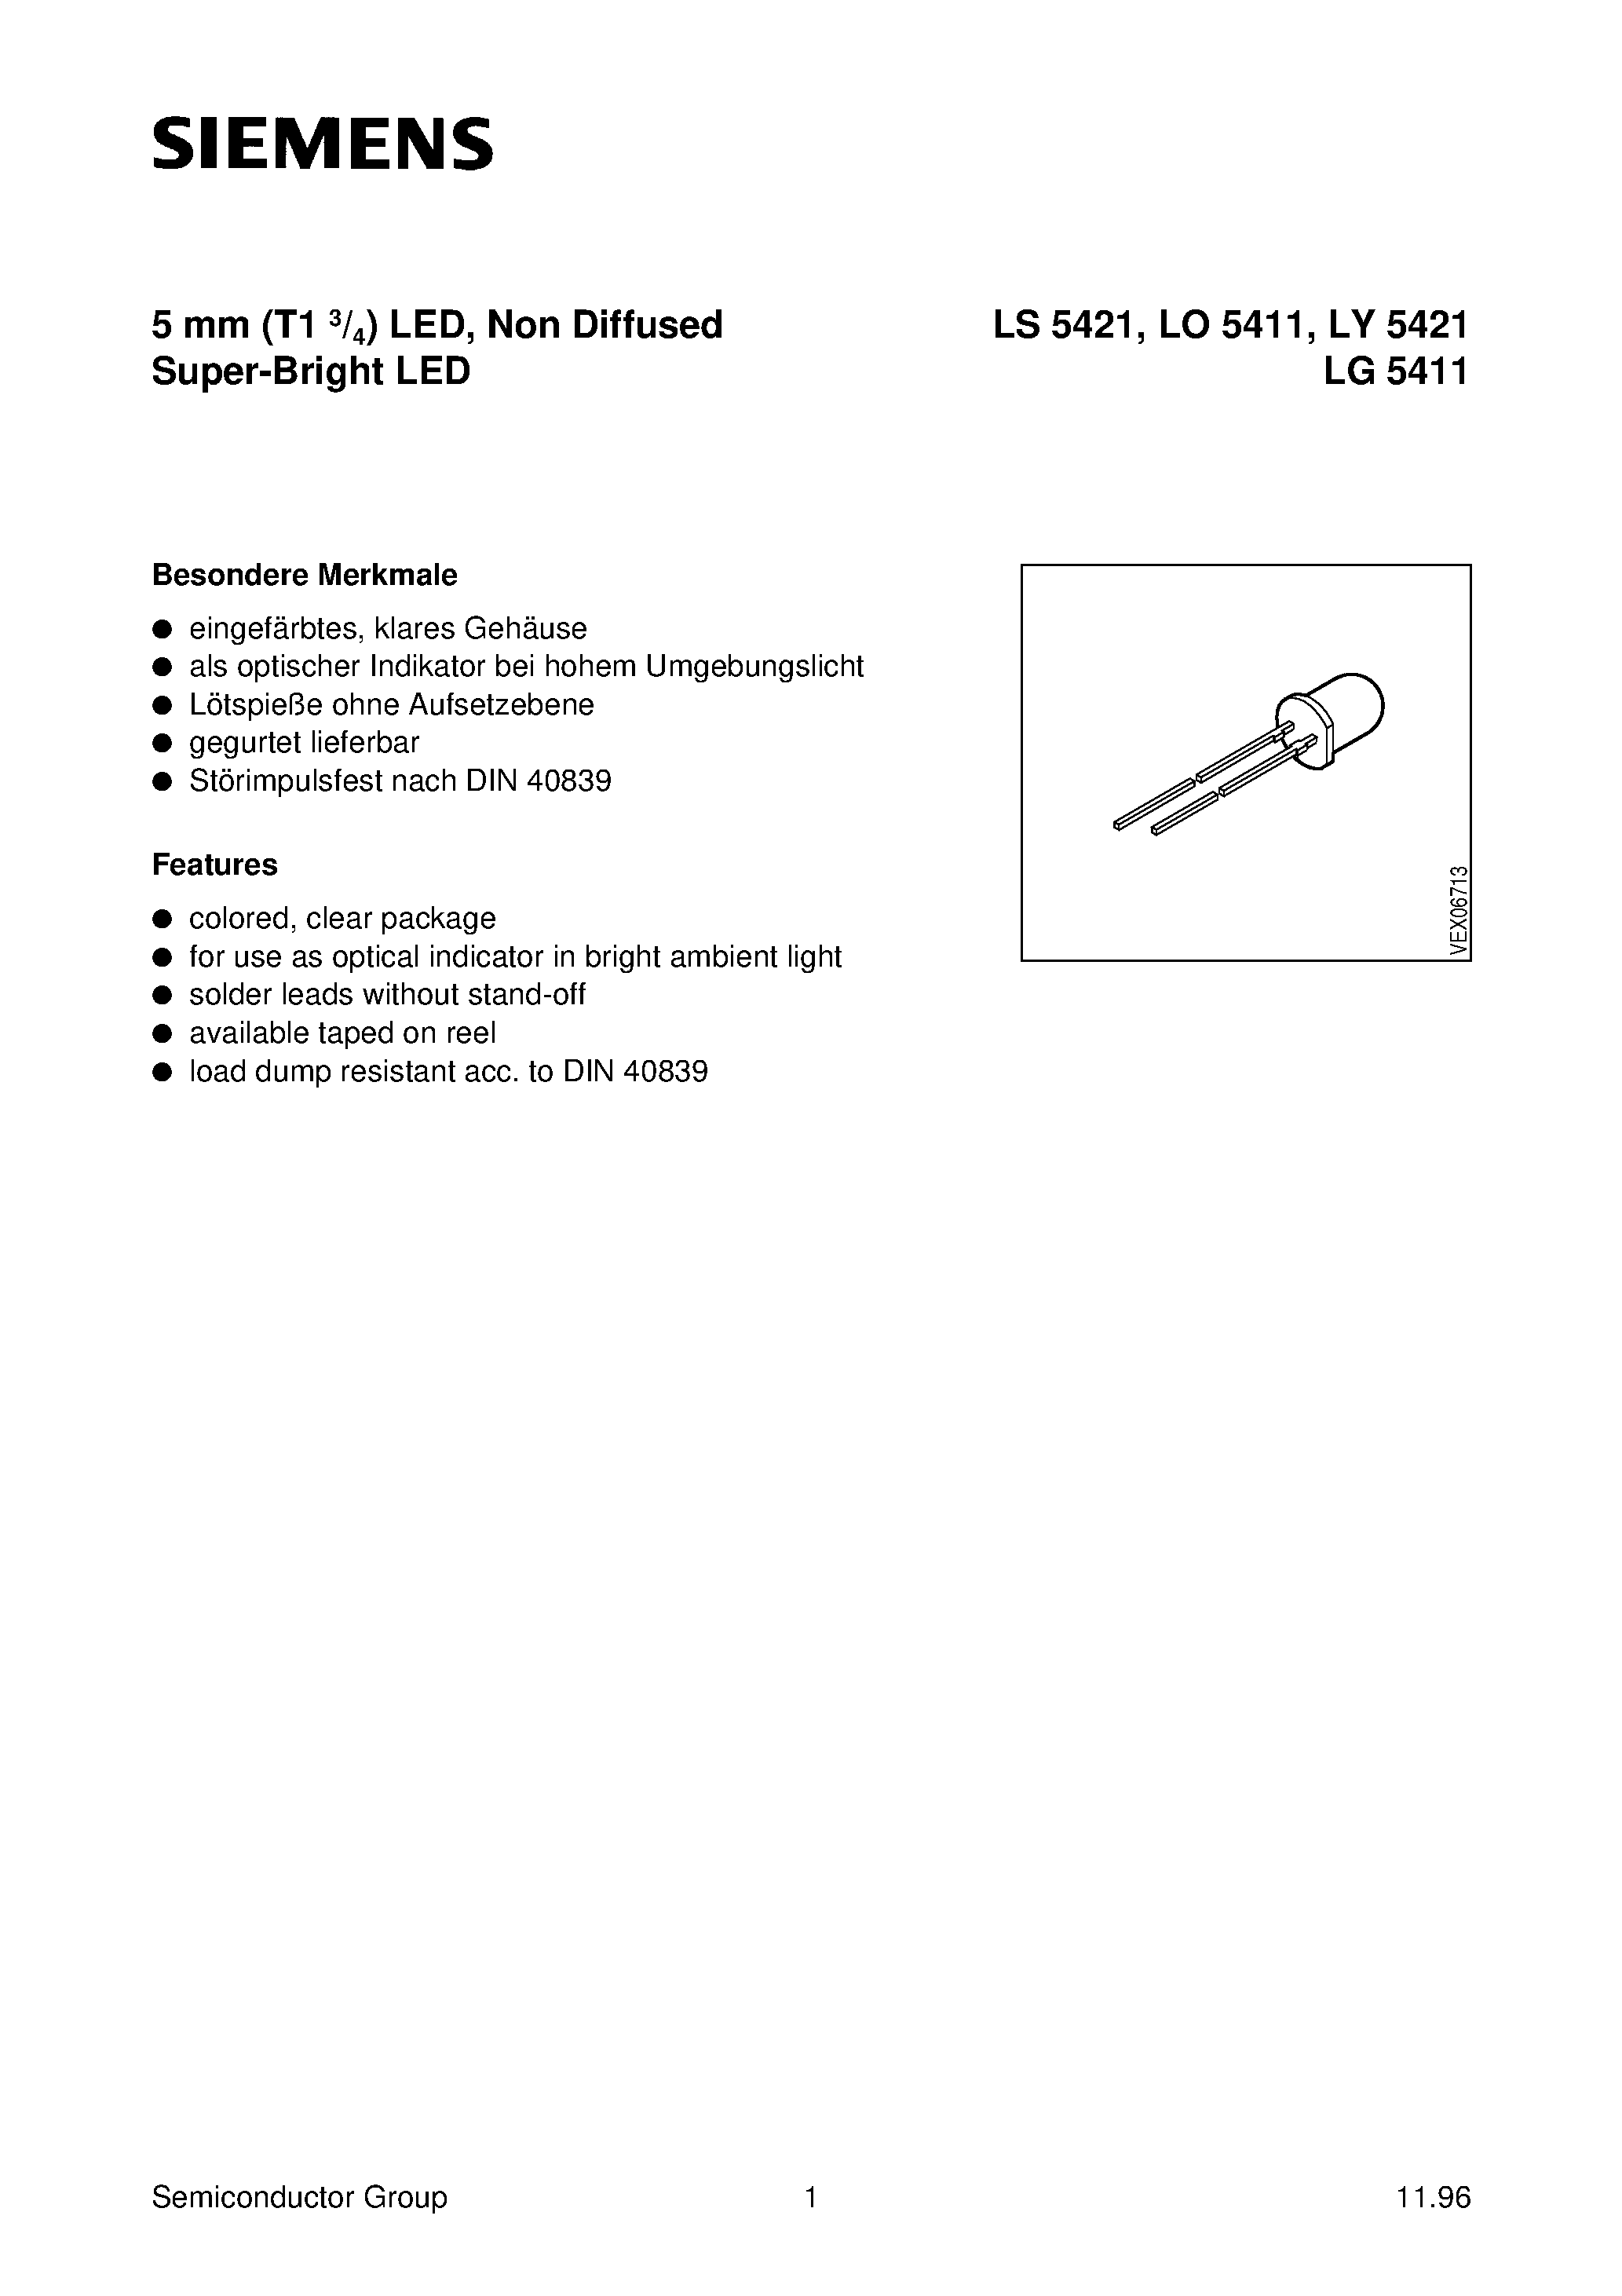 Даташит LS5421-Q - SUPERBRIGHT T1(5mm) LED LAMP страница 1